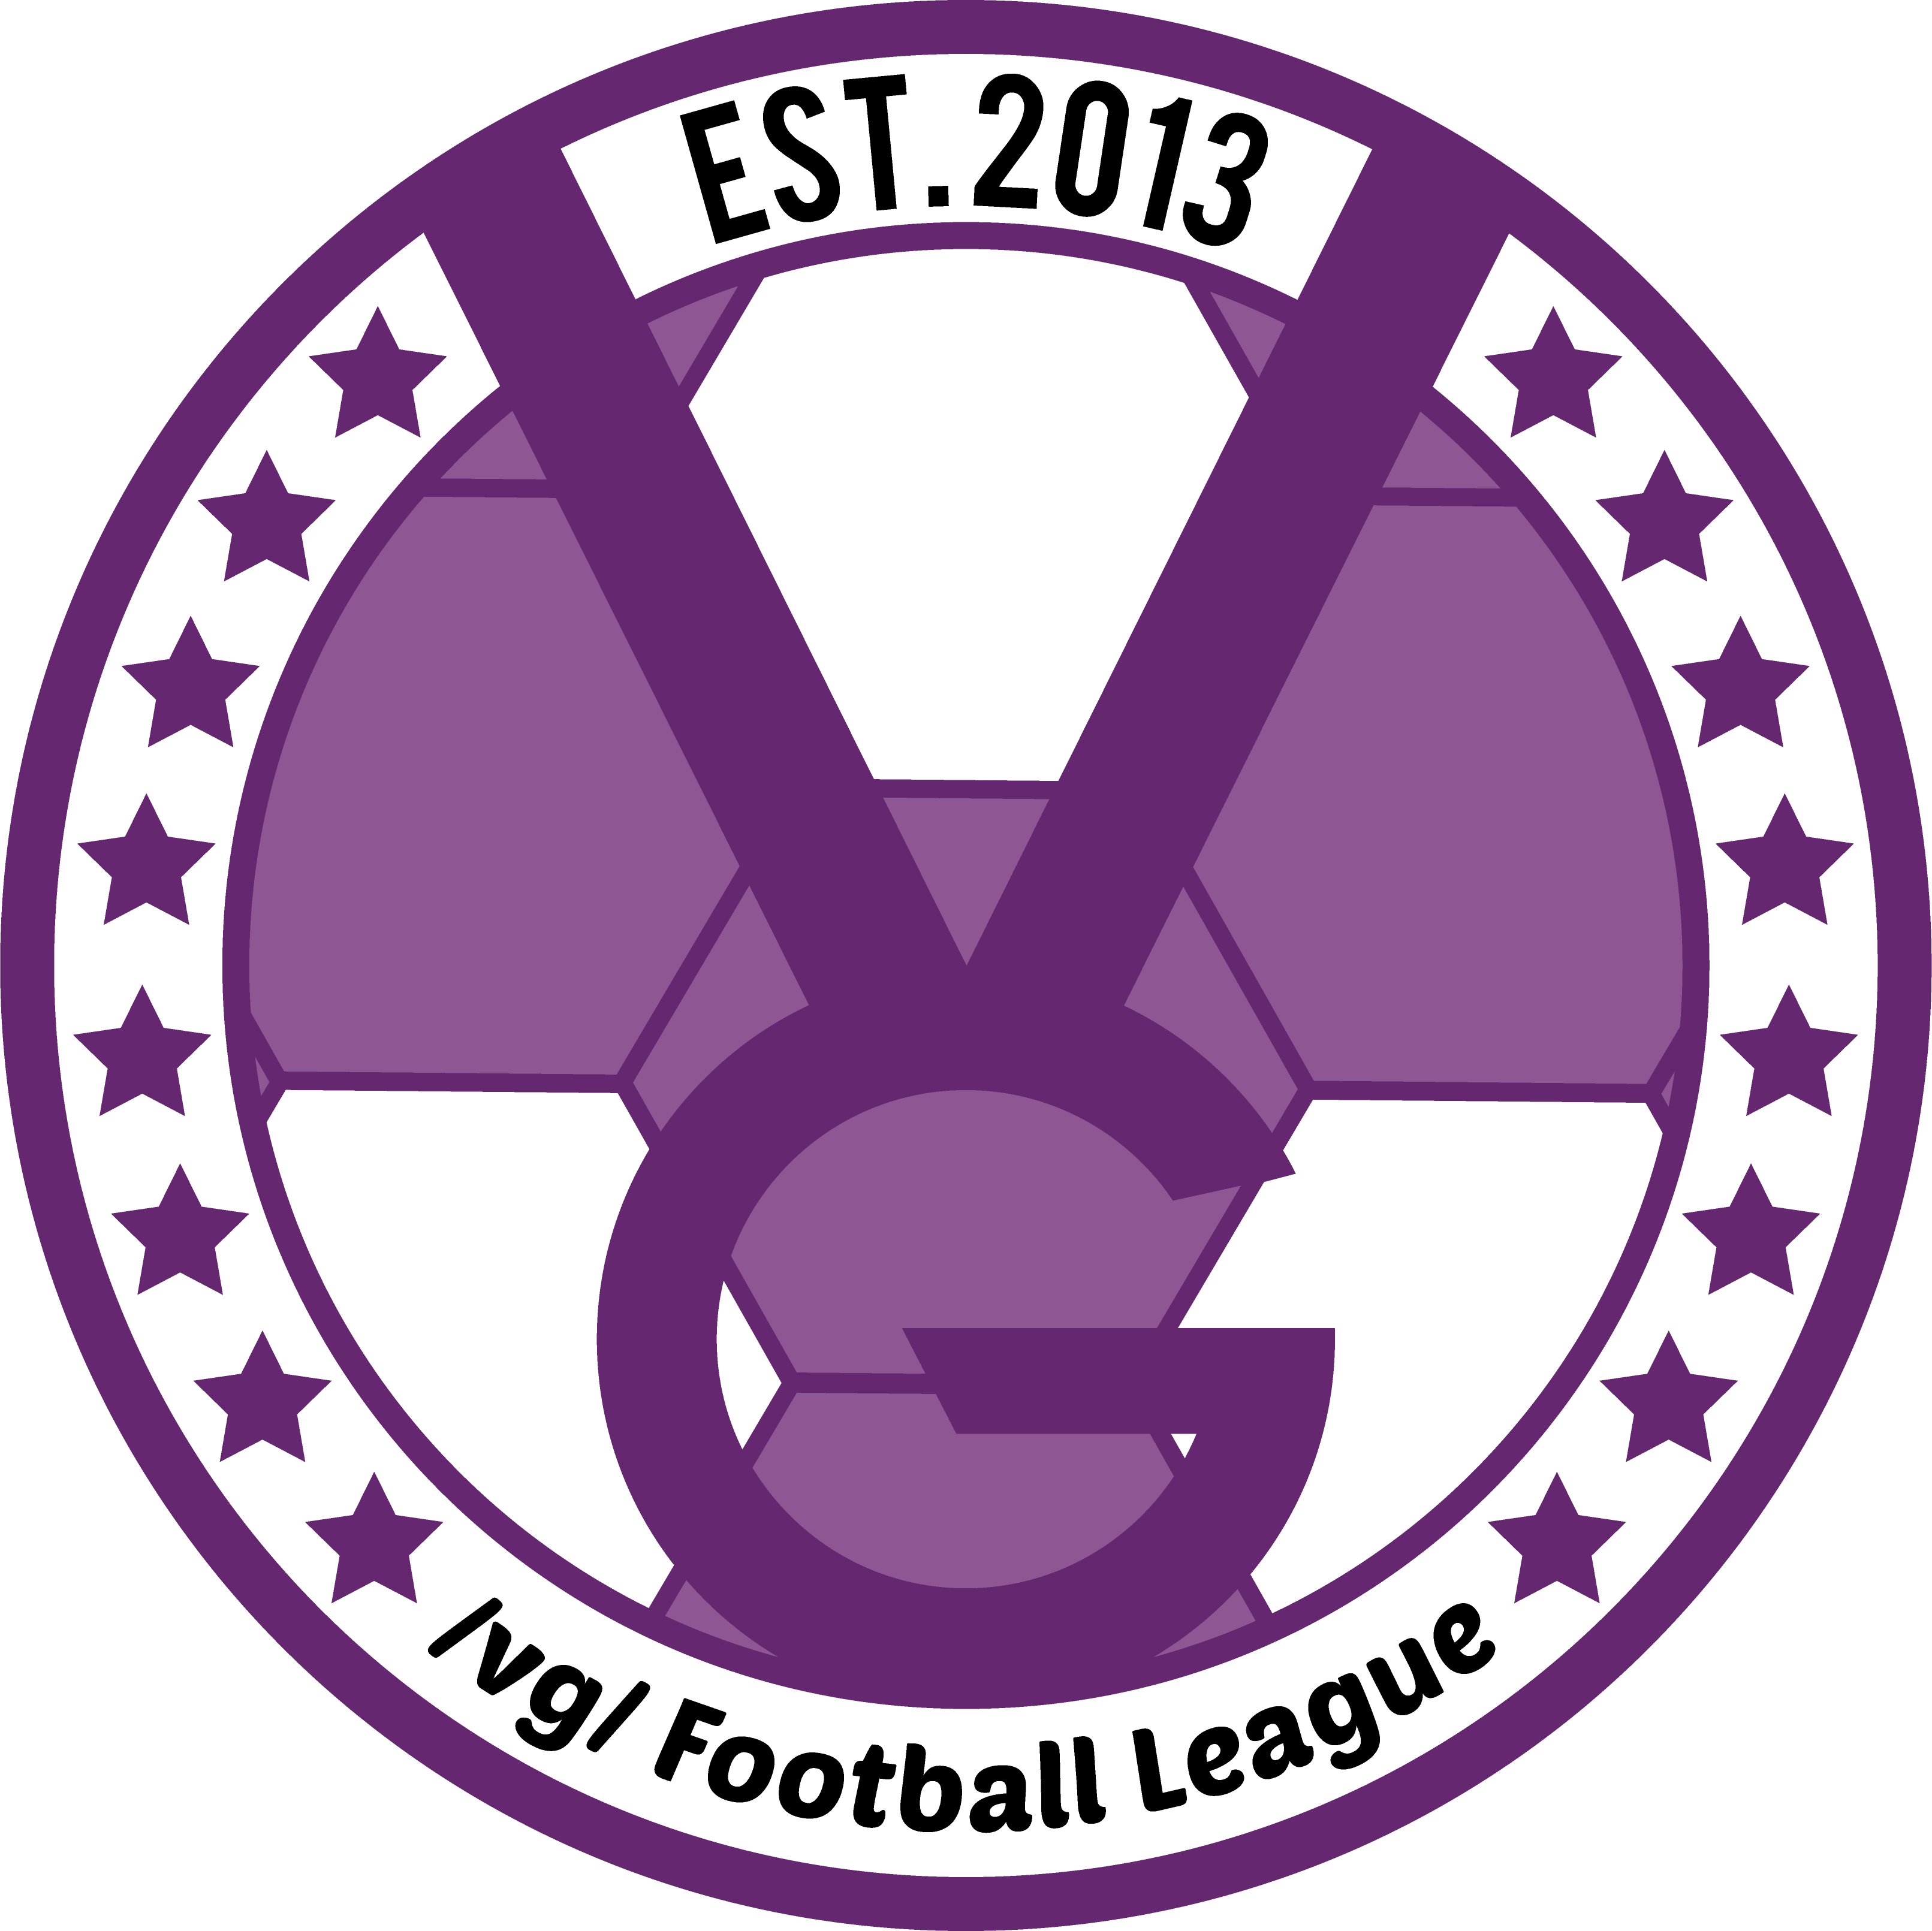 /vg/ League 21